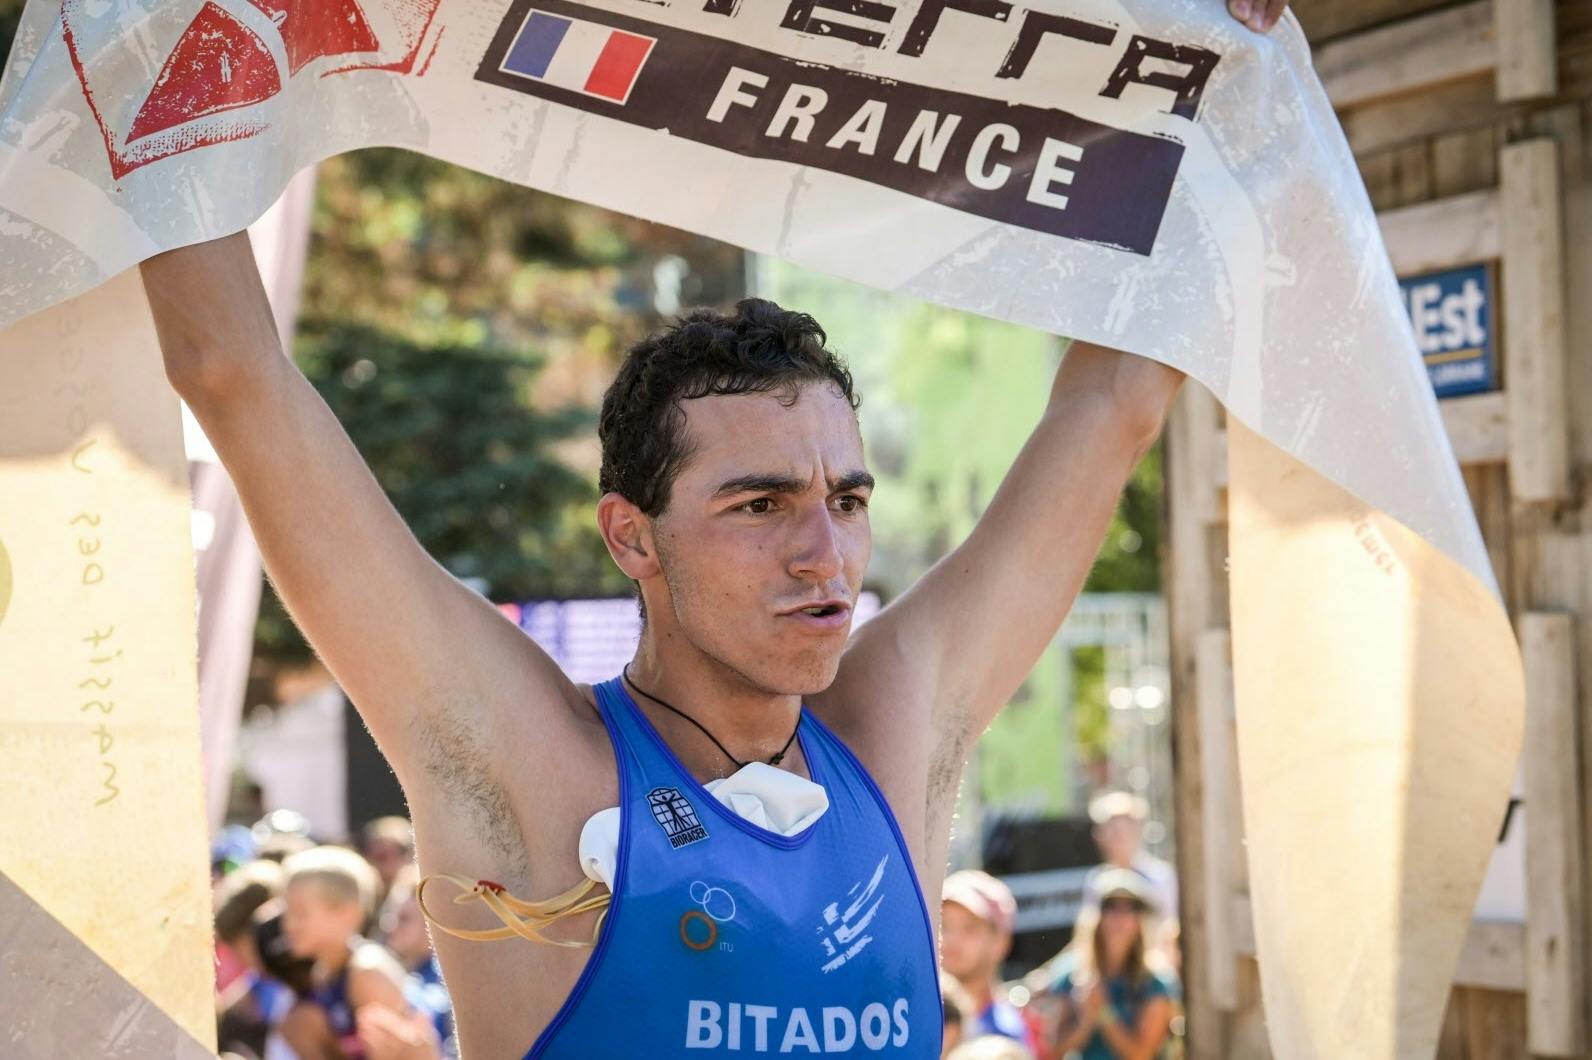 Μεγάλος νικητής του XTERRA Short Track France ο Παναγιώτης Μπιτάδος! (Vid)